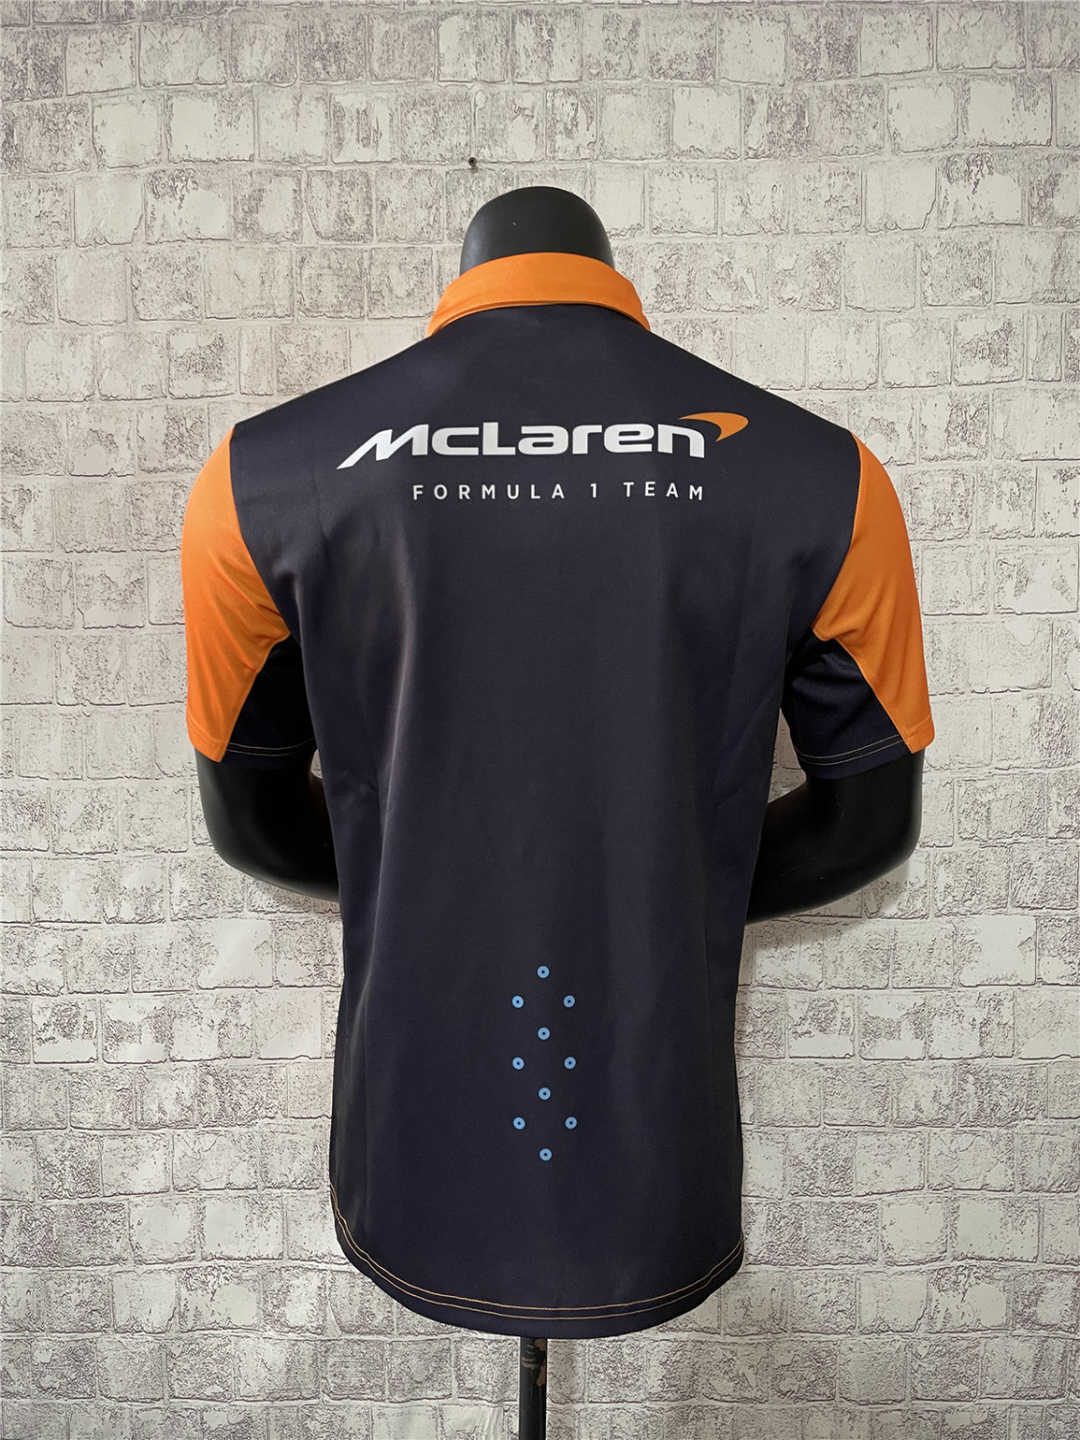 McLaren F1 Team Polo Shirt Orange 2023 Men's